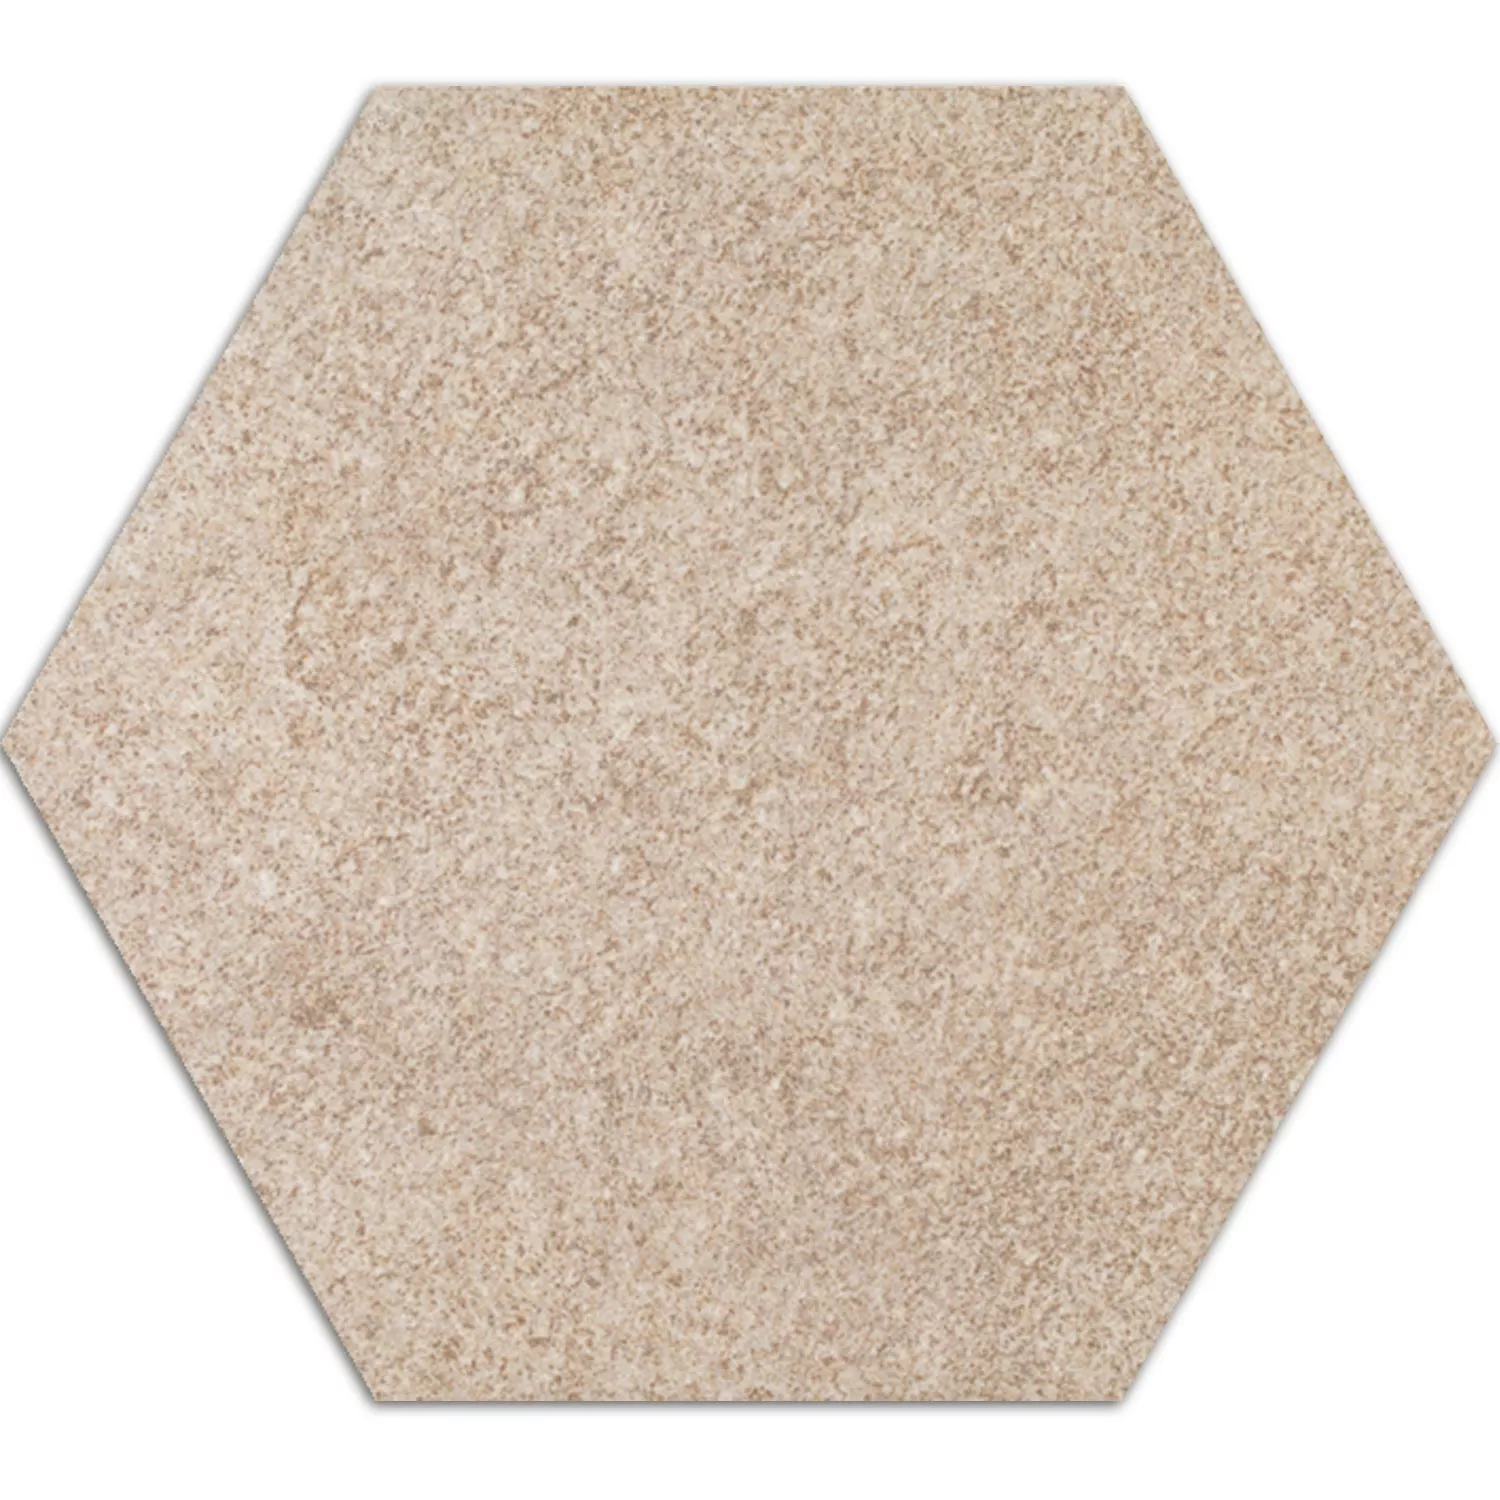 Sample Cement Tiles Optic Hexagon Floor Tiles Atlanta Beige